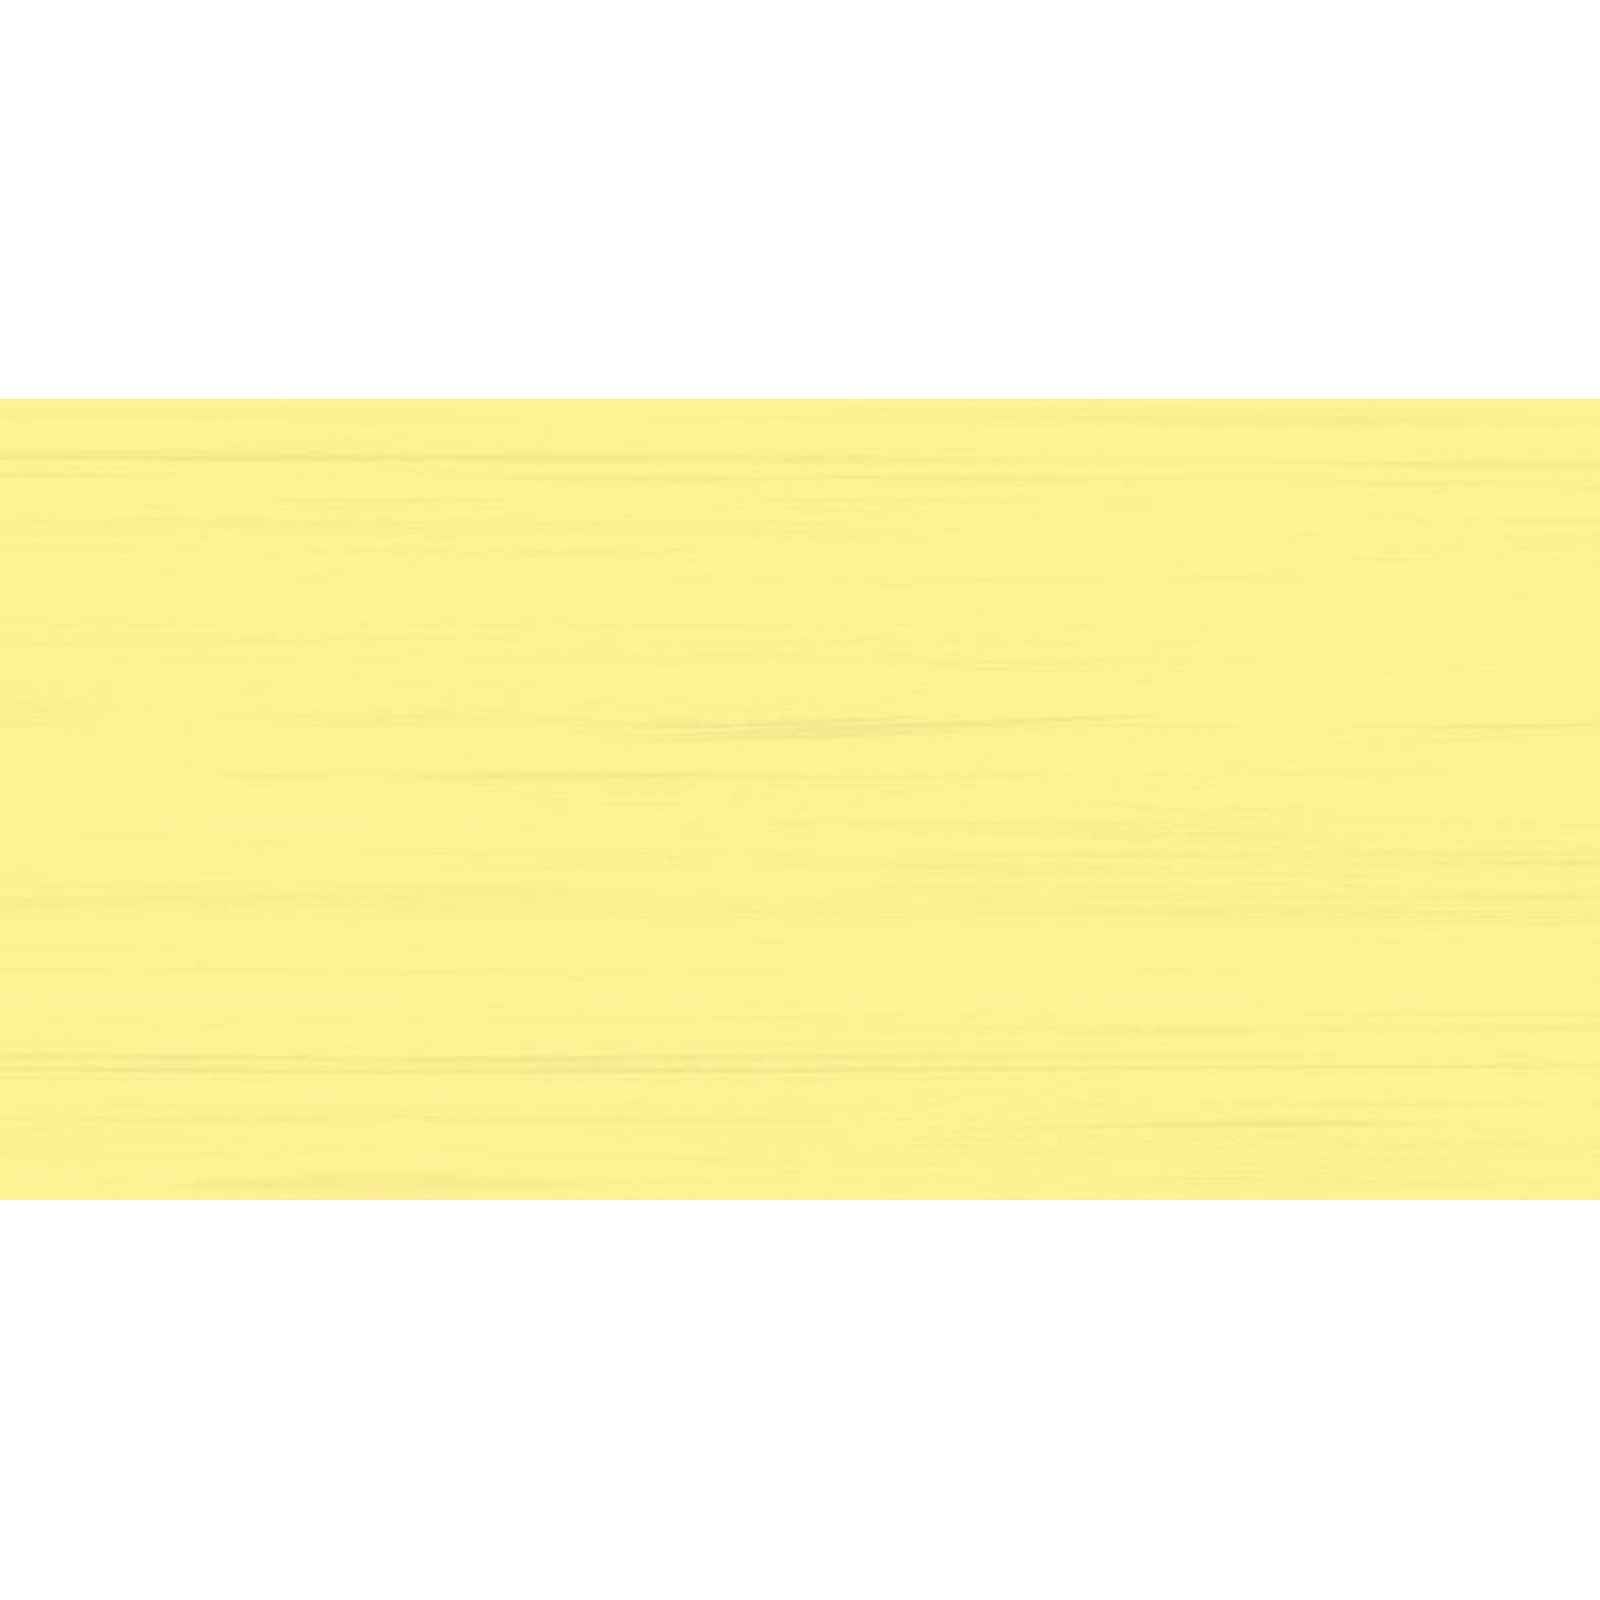 Obklad Rako Easy R žlutá 20x40 cm mat WATMB063.1